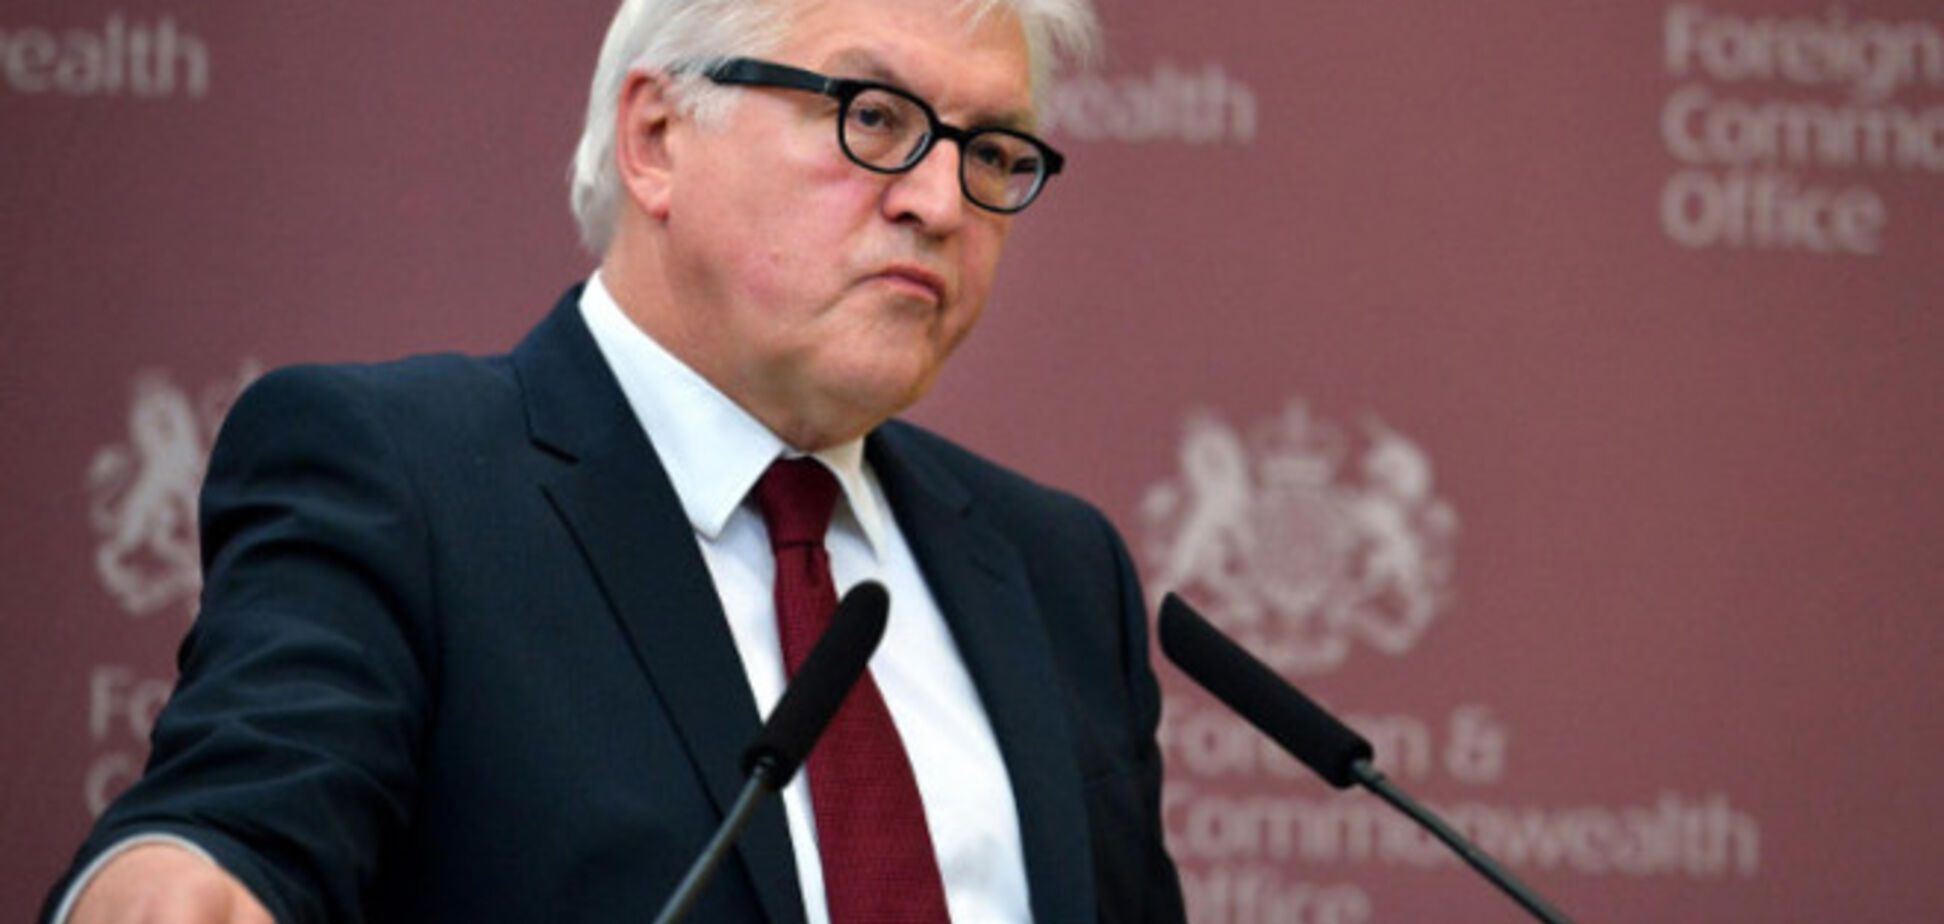 Германия пообещала вернуться к просьбе Украины про отправку миротворцев на Донбасс - Штайнмайер